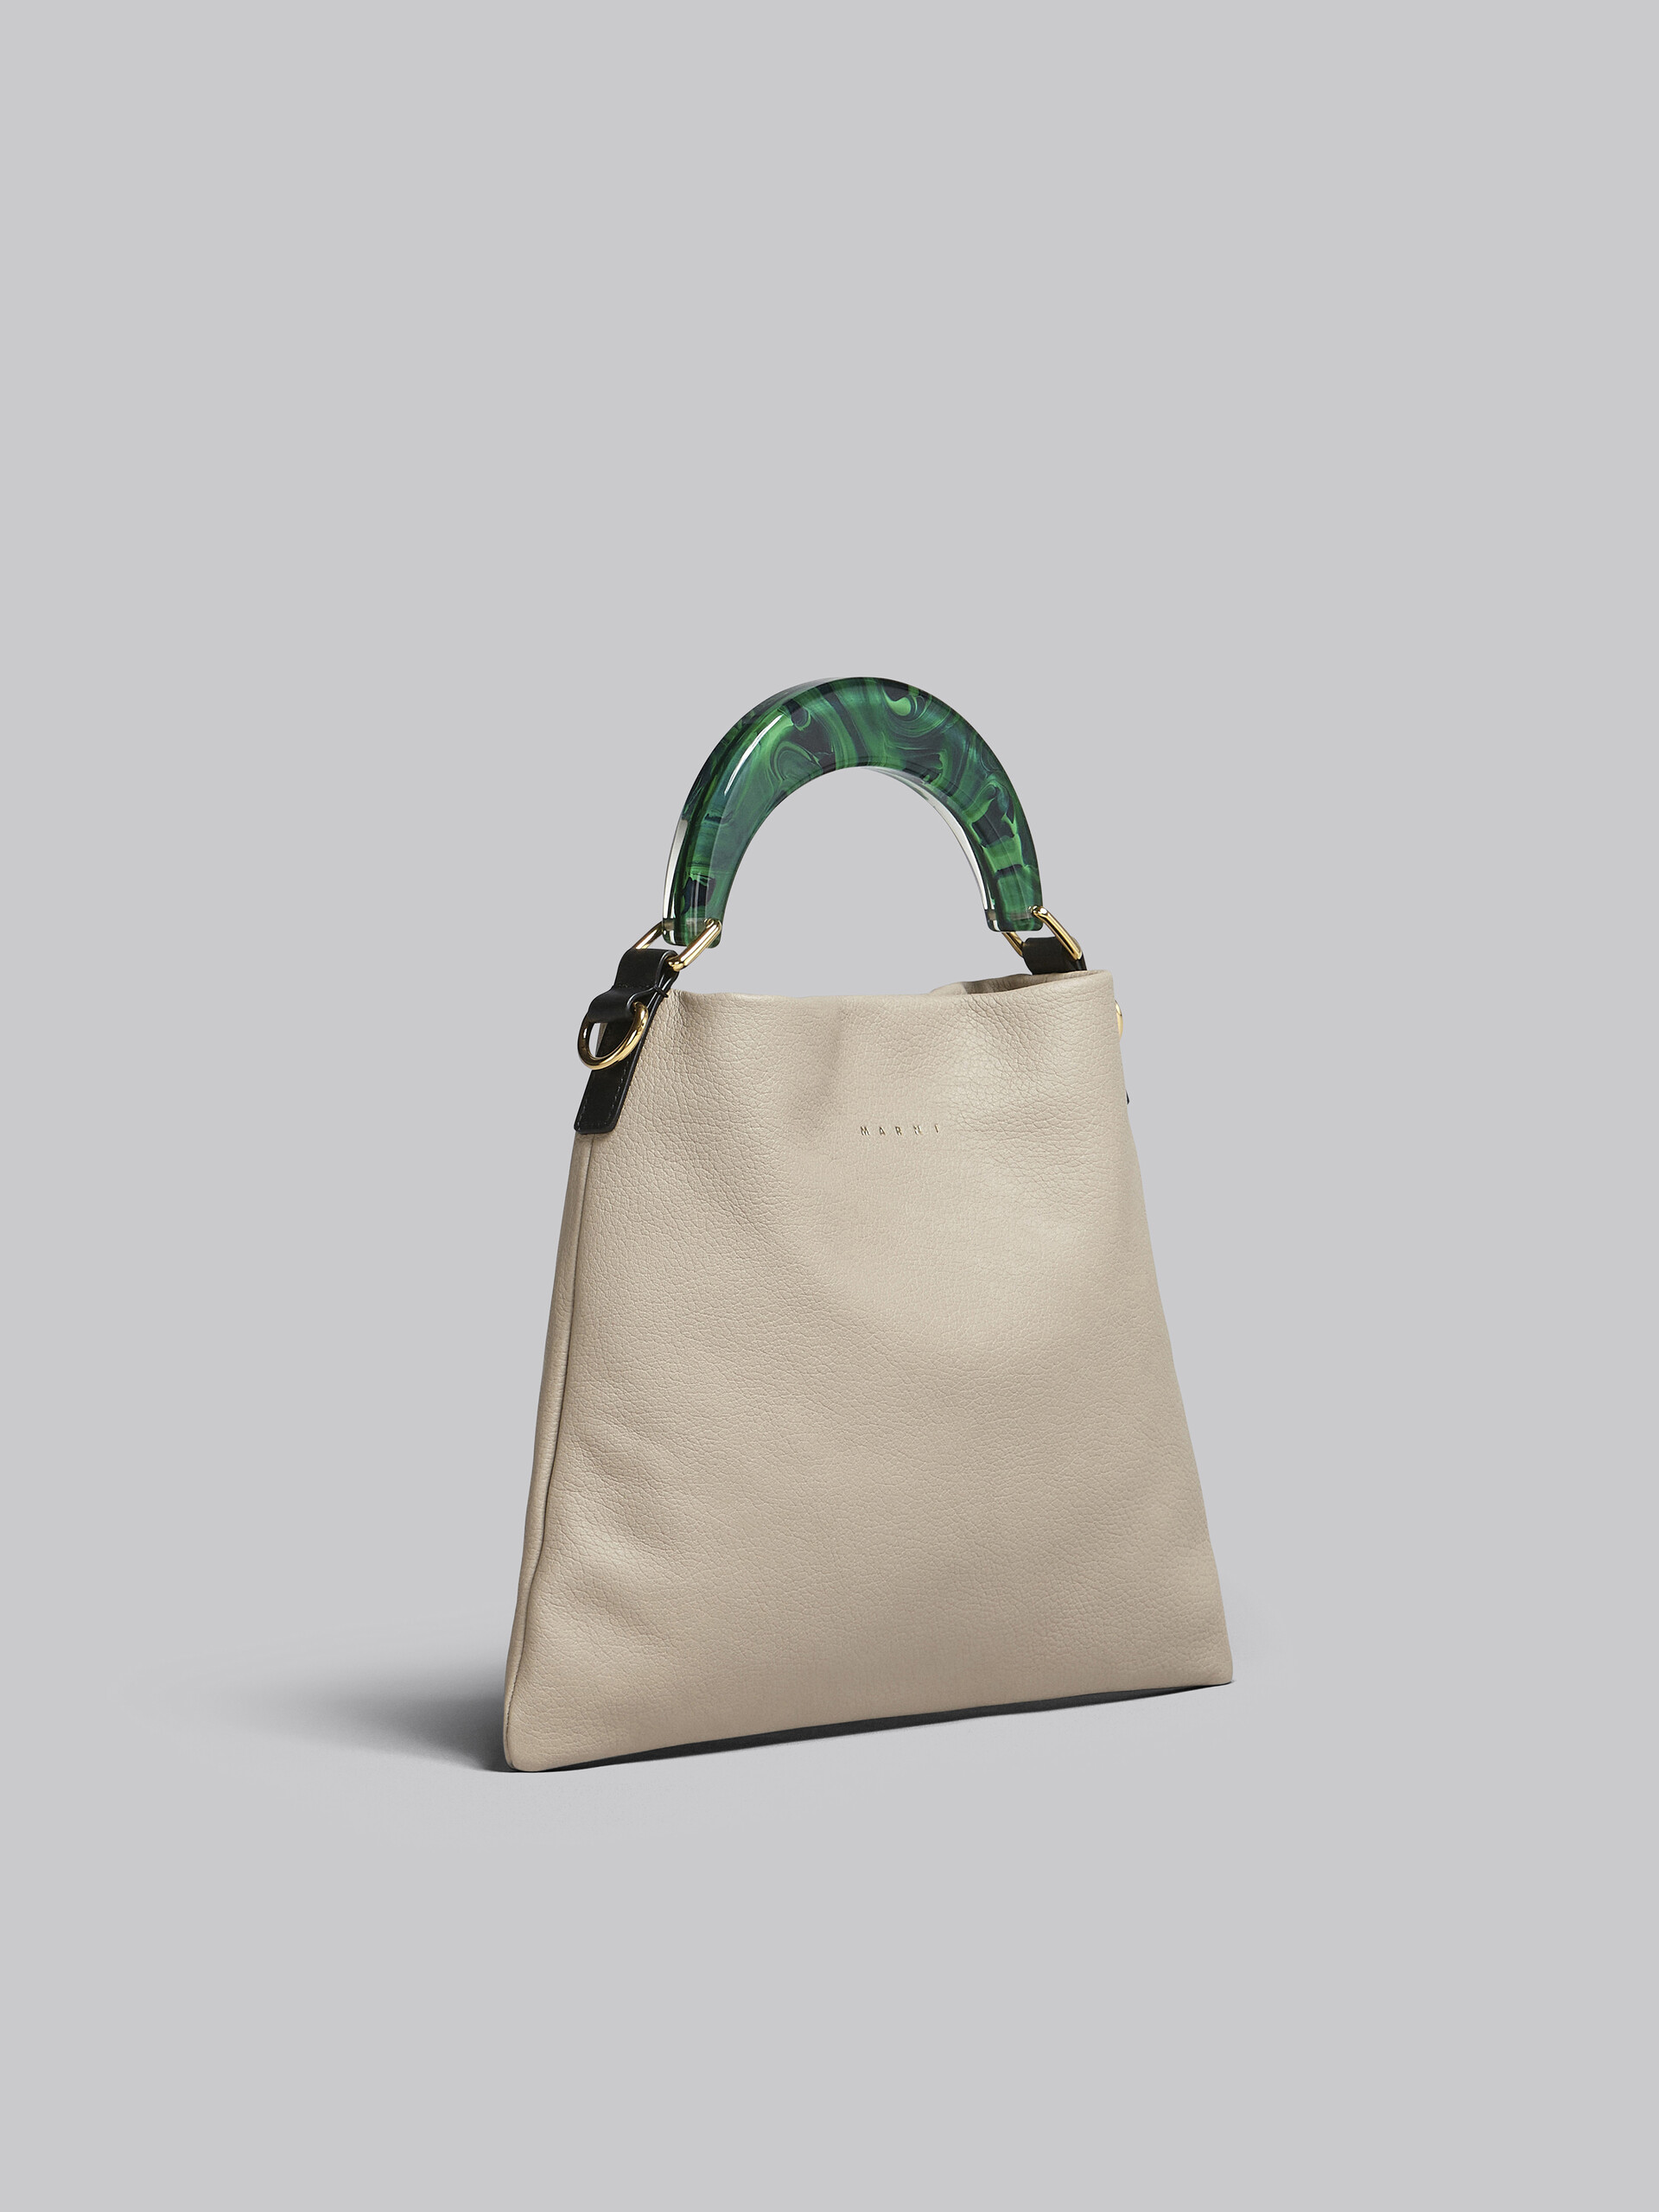 Venice small bag in beige leather - Shoulder Bag - Image 6